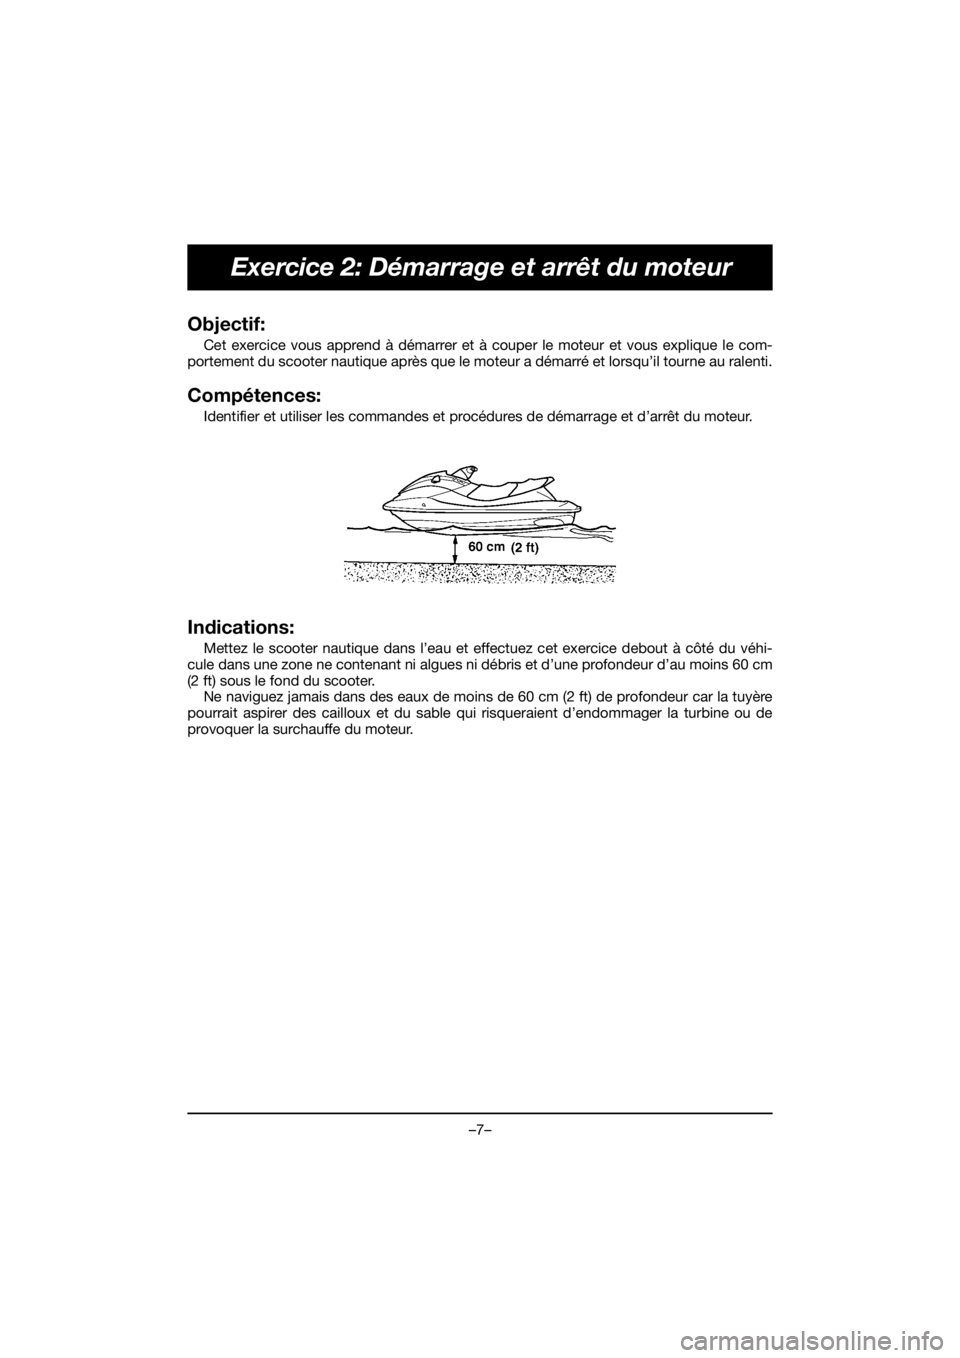 YAMAHA FX HO 2020  Manuale de Empleo (in Spanish) –7–
Exercice 2: Démarrage et arrêt du moteur
Objectif: 
Cet exercice vous apprend à démarrer et à couper le moteur et vous explique le com-
portement du scooter nautique après que le moteur 